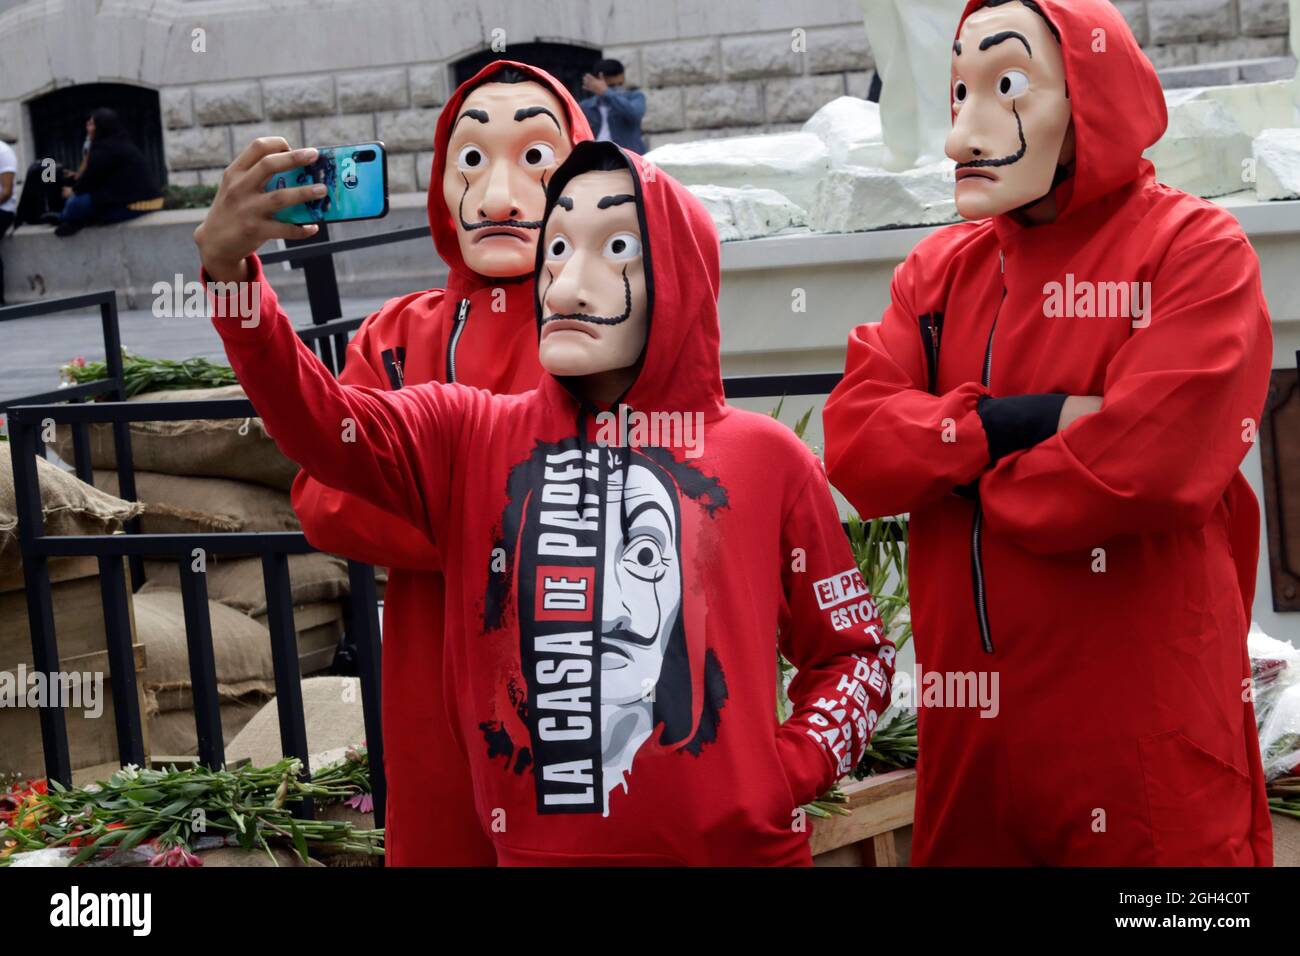 Nicht exklusiv: MEXIKO-STADT, MEXIKO - SEPTEMBER 3: Personen, die als Figuren aus der Netflix-Originalserie 'La Casa de Papel' verkleidet sind, machen ein Selfie Stockfoto